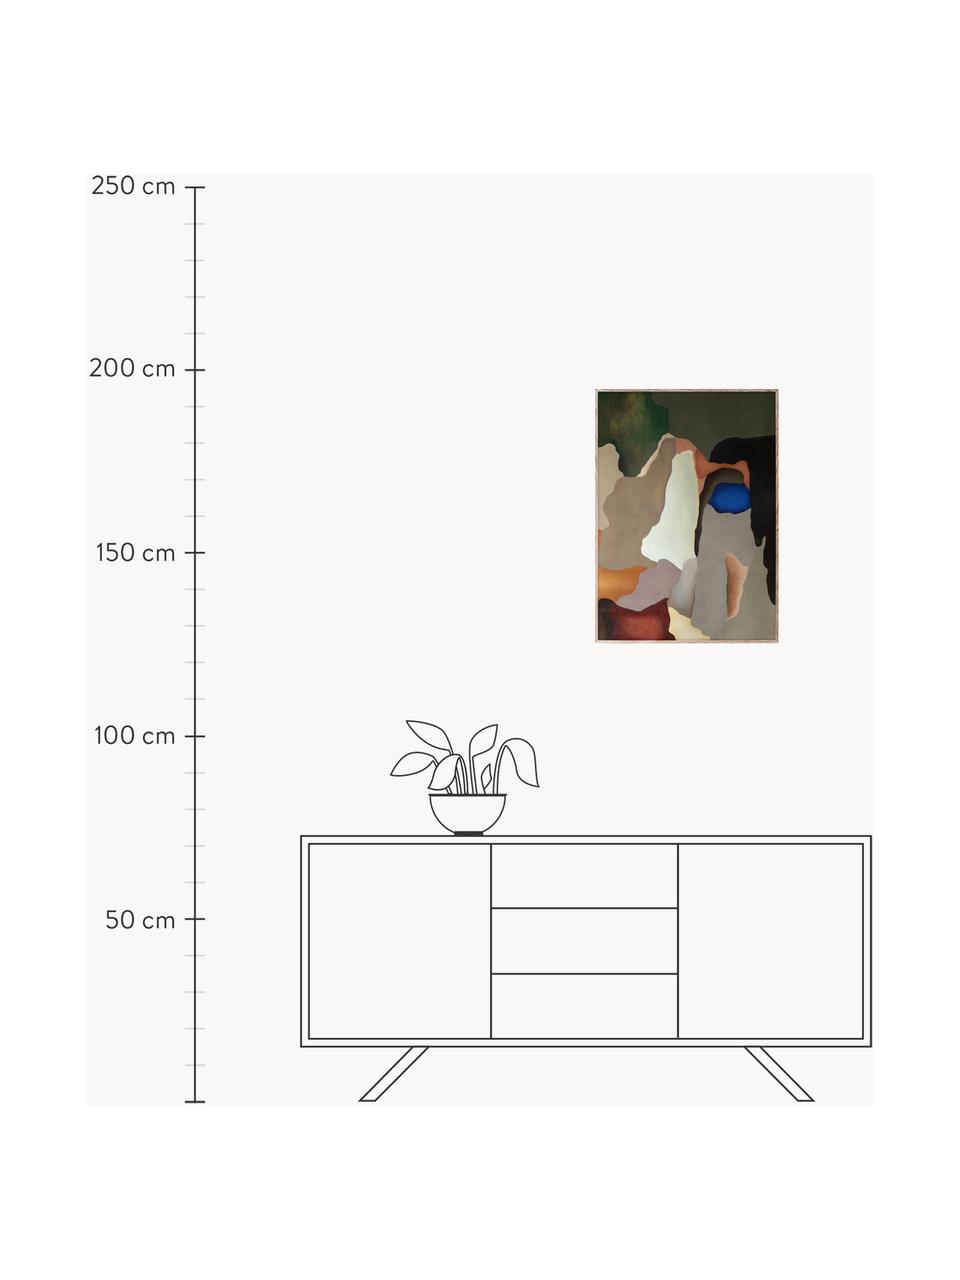 Poster Conversations in Colour 02, 210 g de papier mat de la marque Hahnemühle, impression numérique avec 10 couleurs résistantes aux UV, Multicolore, larg. 50 x haut. 70 cm